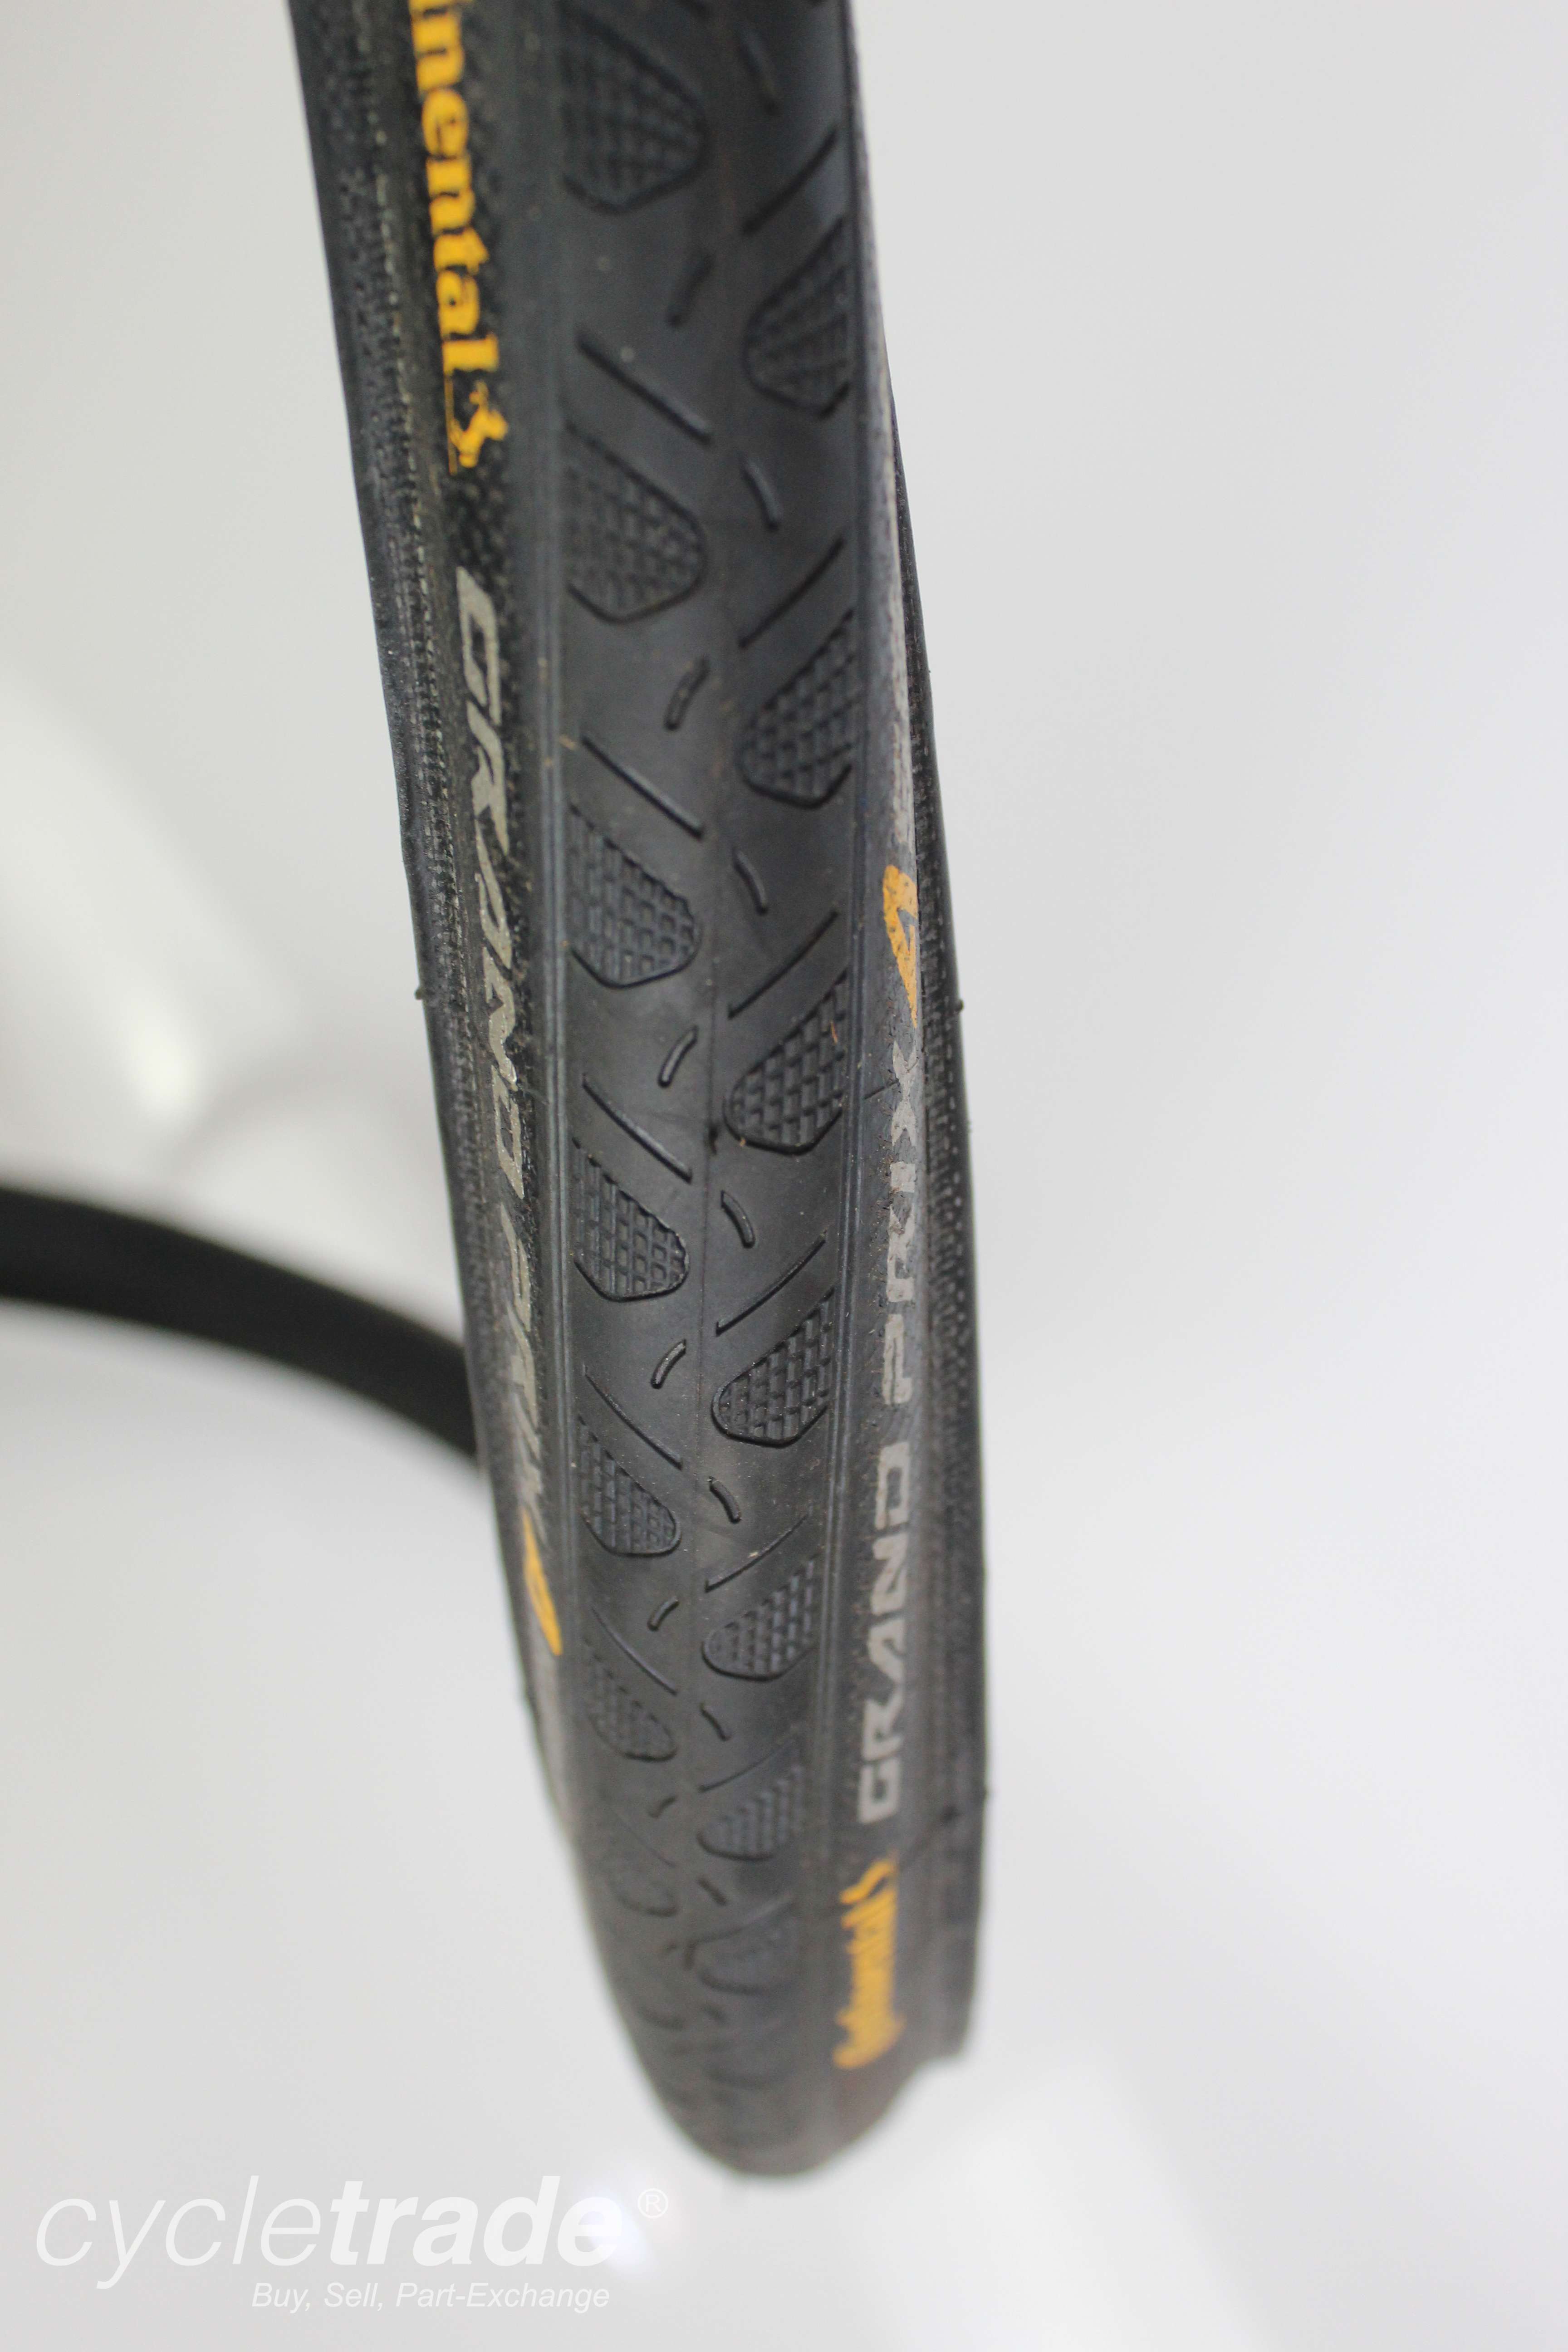 Road Tyre - Continental Grand Prix 4 Season 700x23c Black Clincher - Grade A-